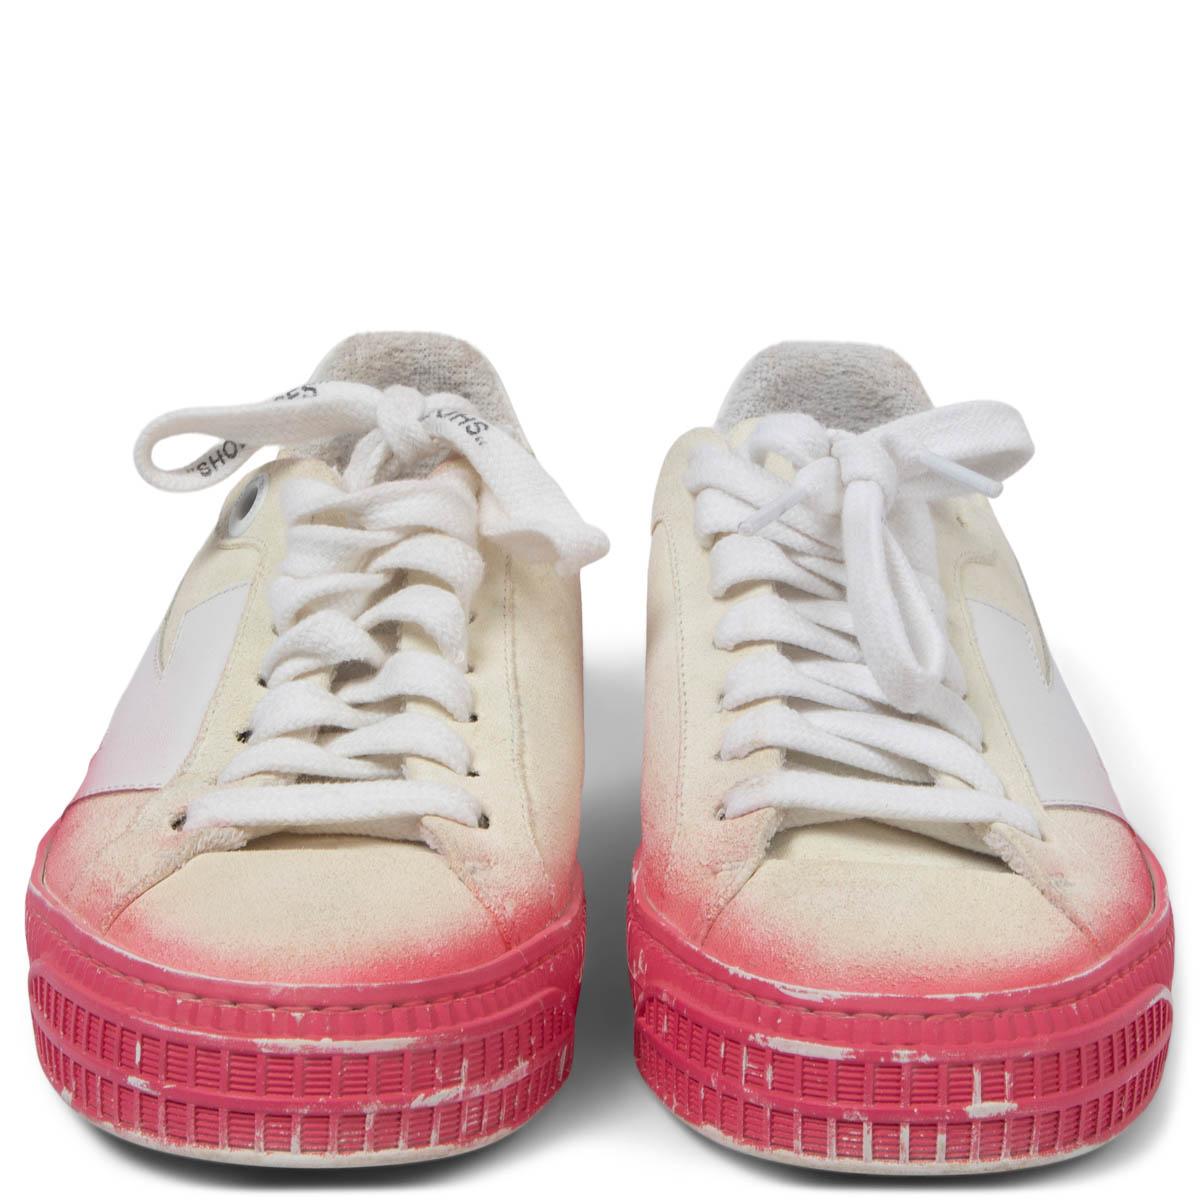 100% authentische OFF-WHITE Arrow Low-Top-Sneakers aus elfenbeinfarbenem Wildleder mit weißem Lederpfeil und rosa Sprühfarbe auf der Gummisohle. Sie wurden getragen und sind in ausgezeichnetem Zustand. 

Messungen
Aufgedruckte Größe	37 (groß